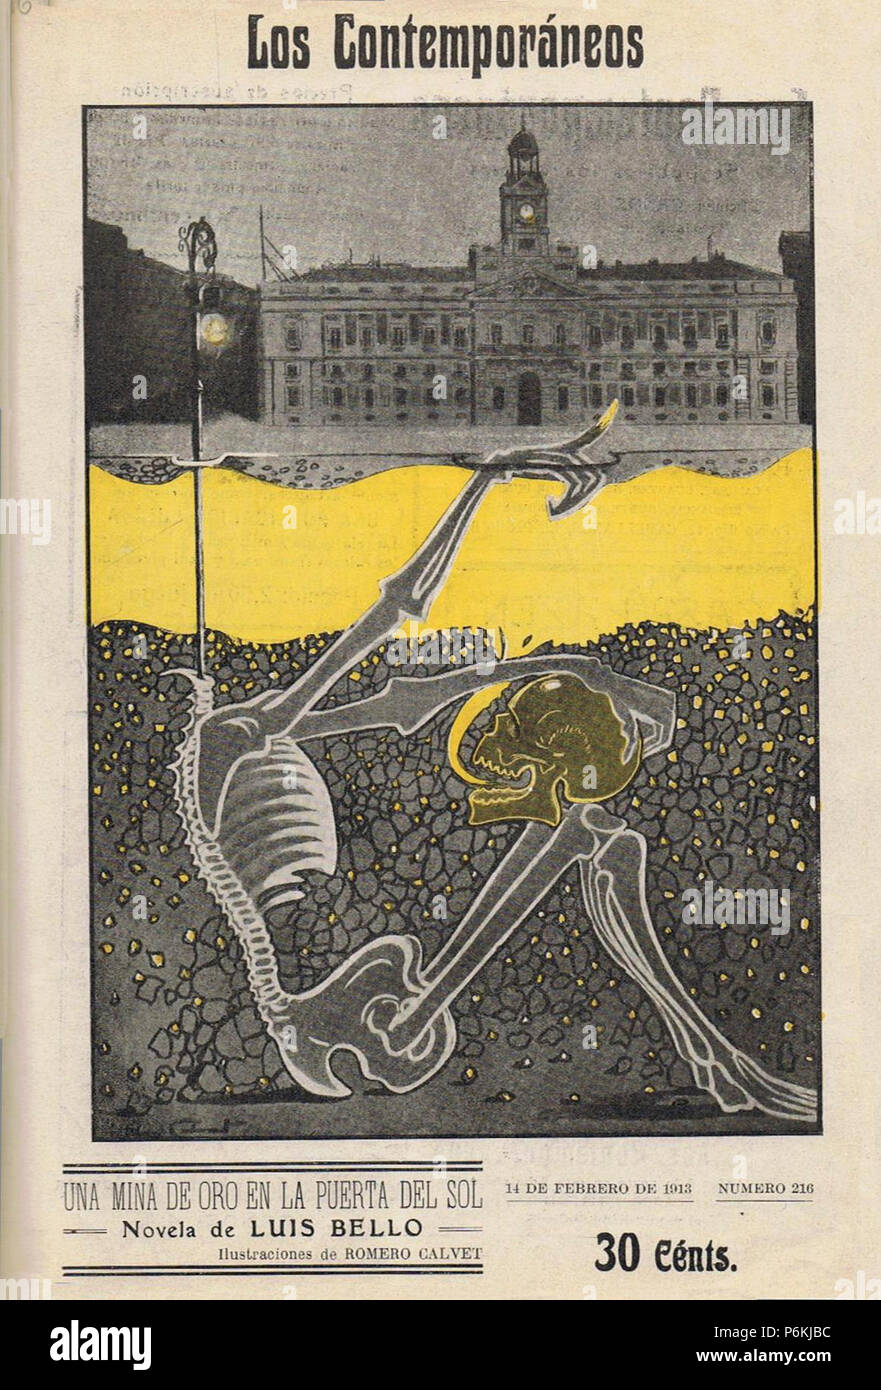 1913-02-14, Los Contemporáneos, Una mina de oro en la Puerta del Sol, novela de Luis Bello, ilustraciones de Romero Calvet. Stock Photo